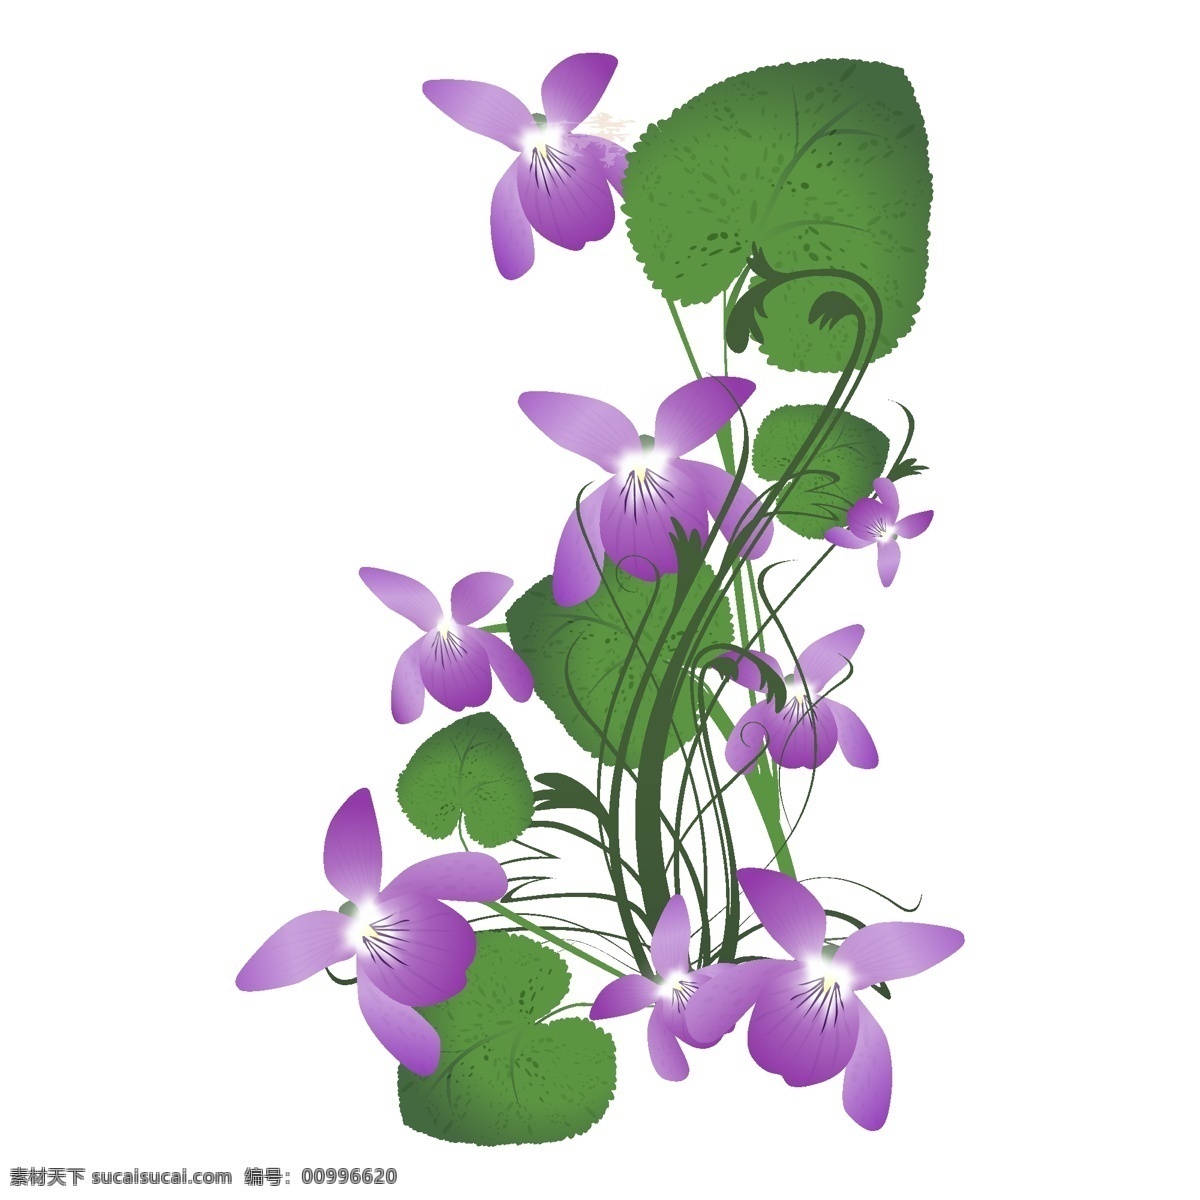 矢量图 服装图案 蝴蝶兰 花朵 写意花卉 植物 面料图库 服装设计 图案花型